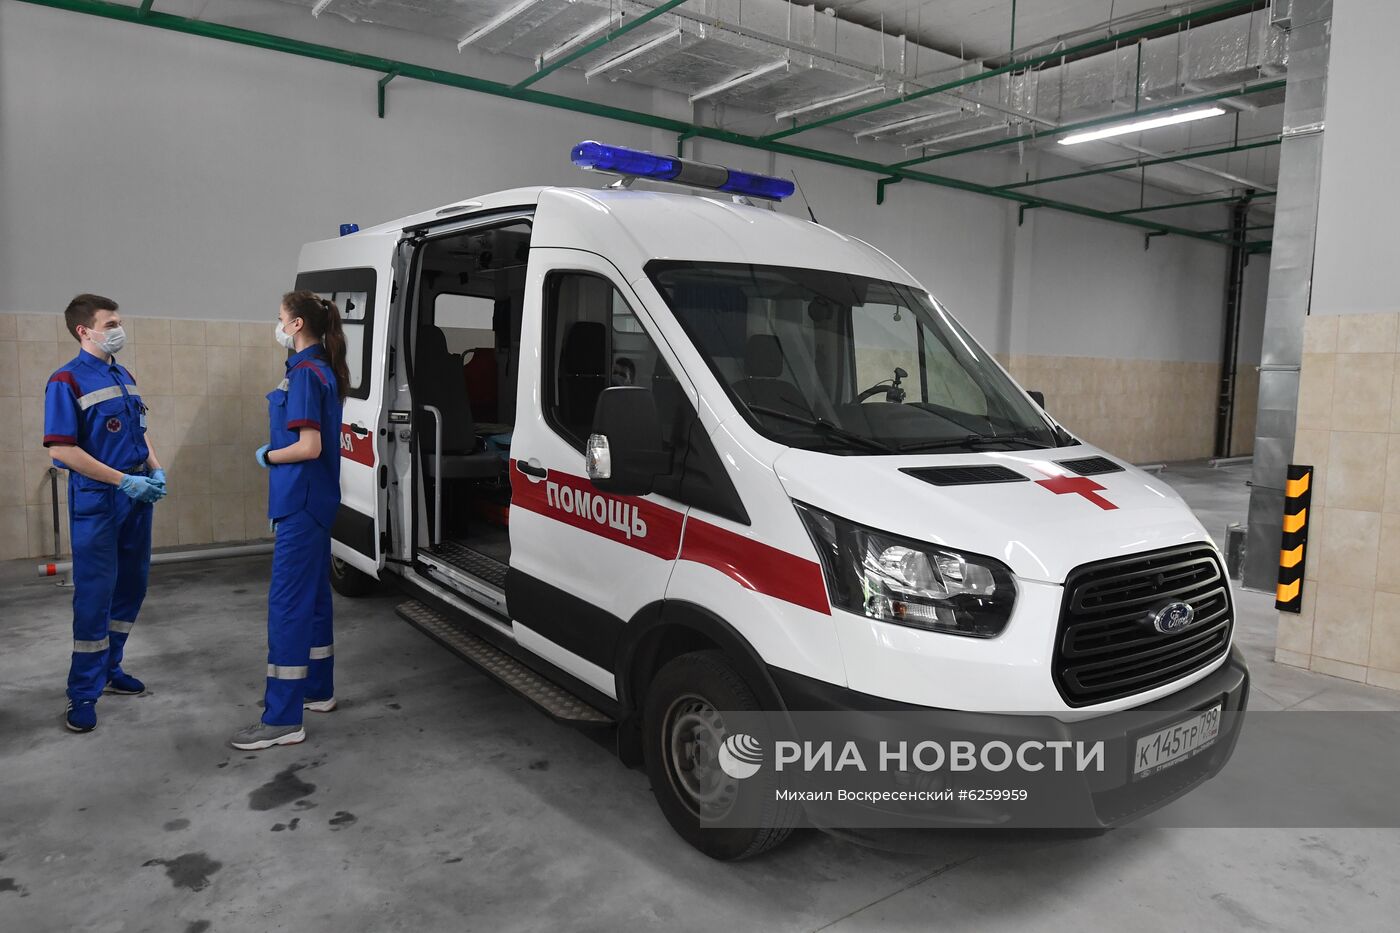 Новая станция скорой помощи в Москве